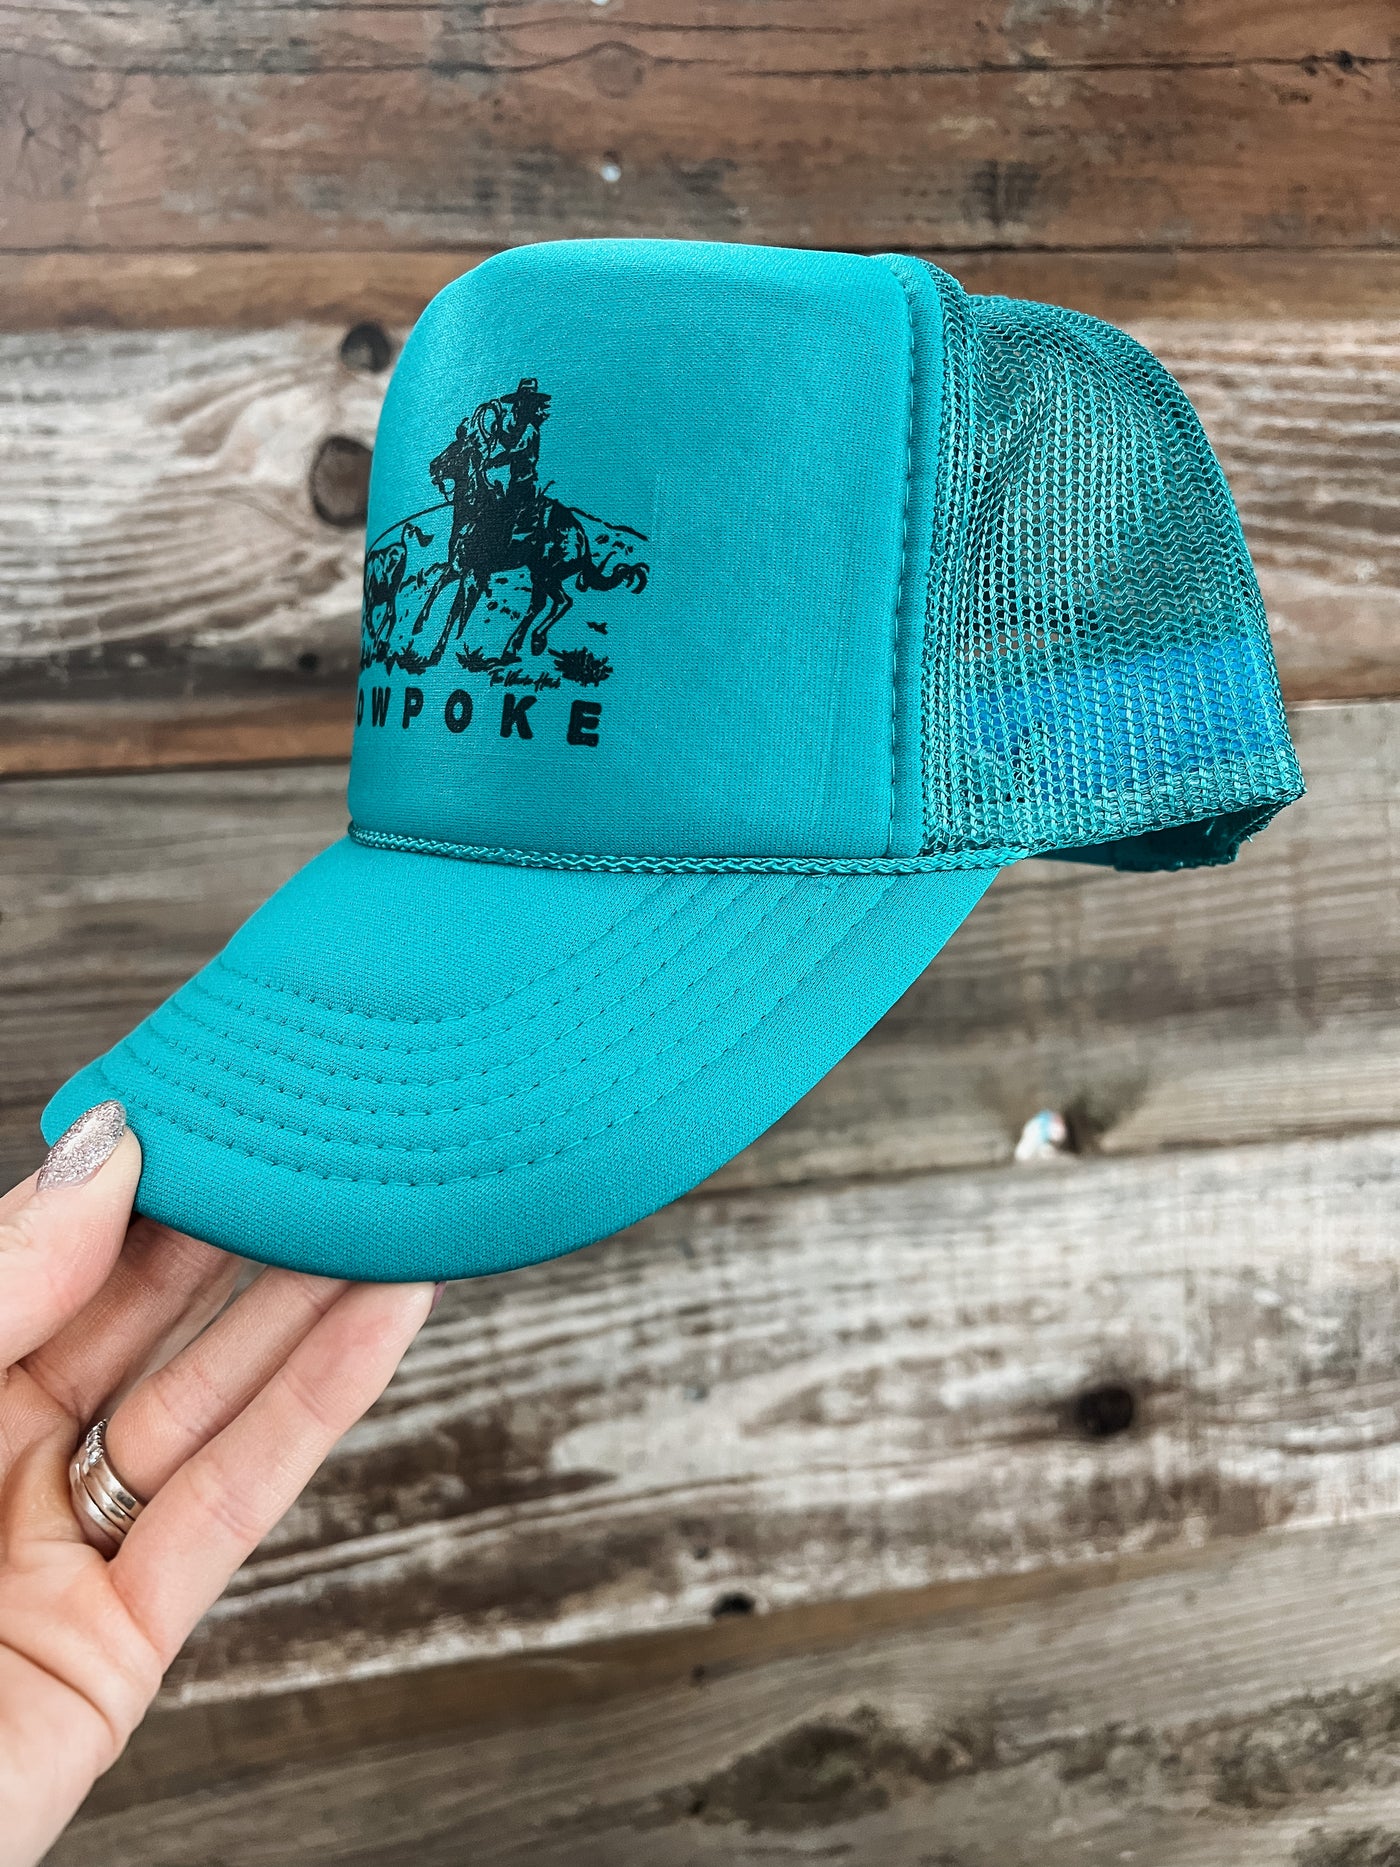 Cowpoke Trucker Hat